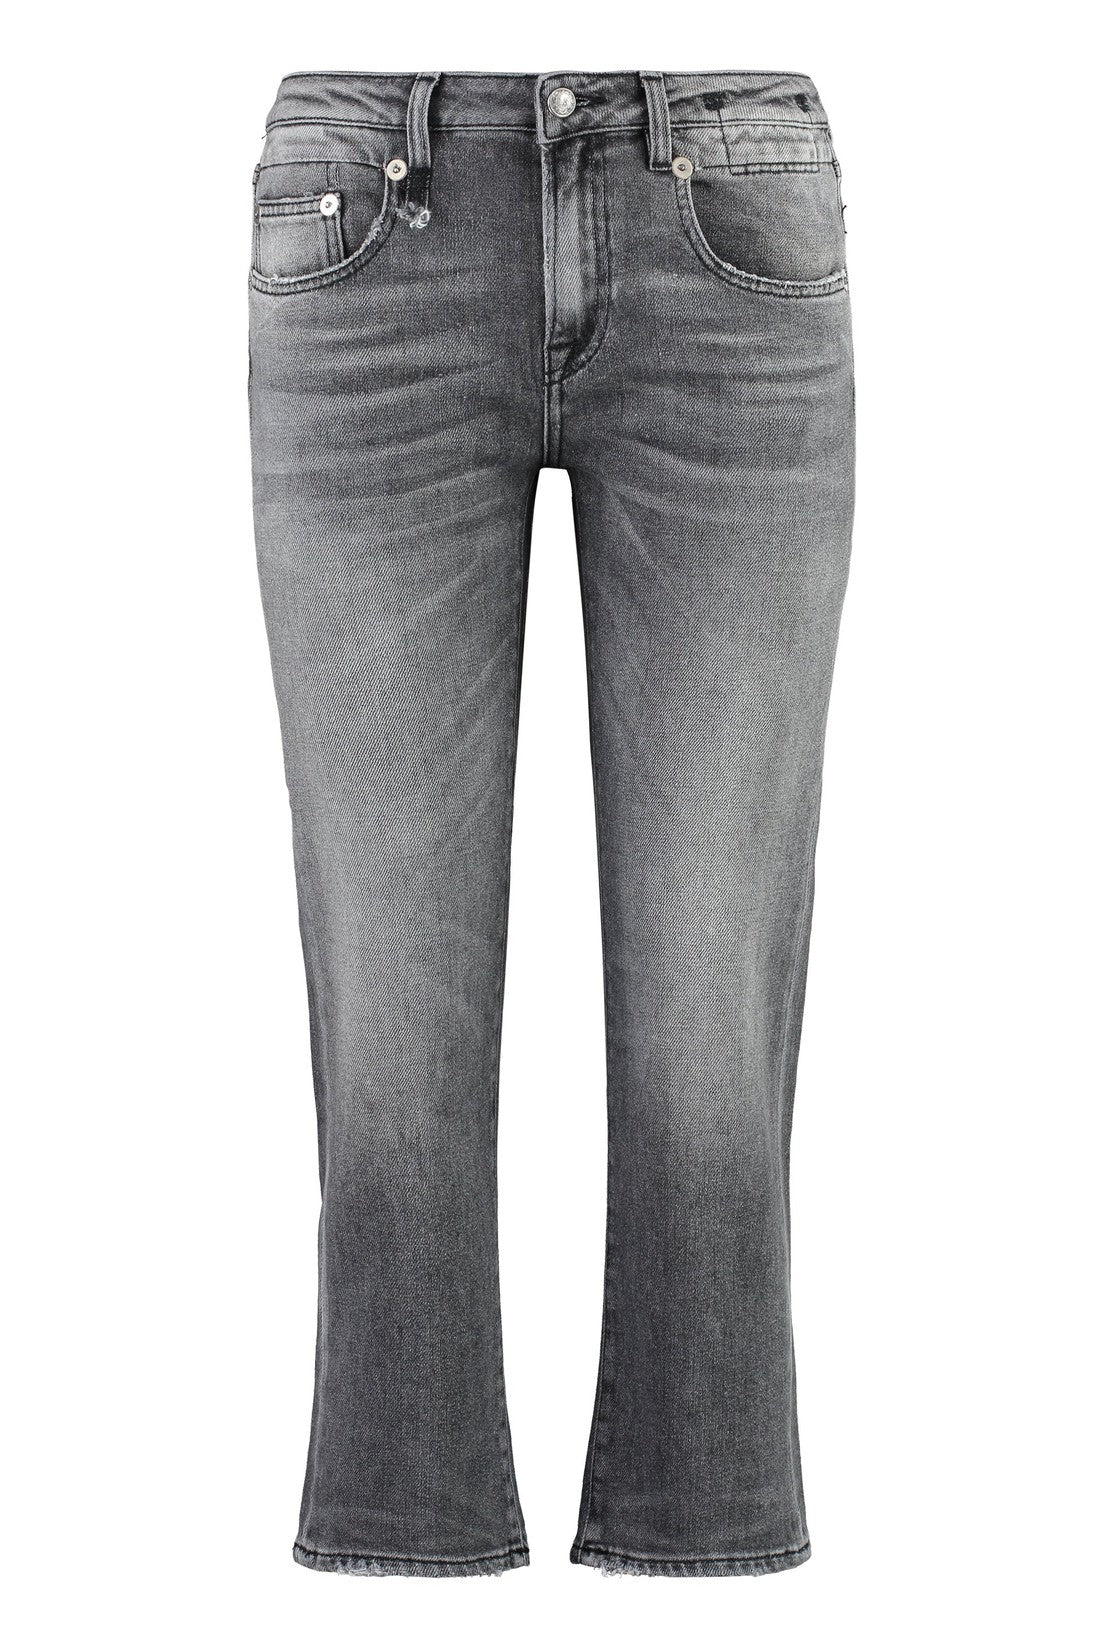 R13-OUTLET-SALE-Boy Straight jeans-ARCHIVIST